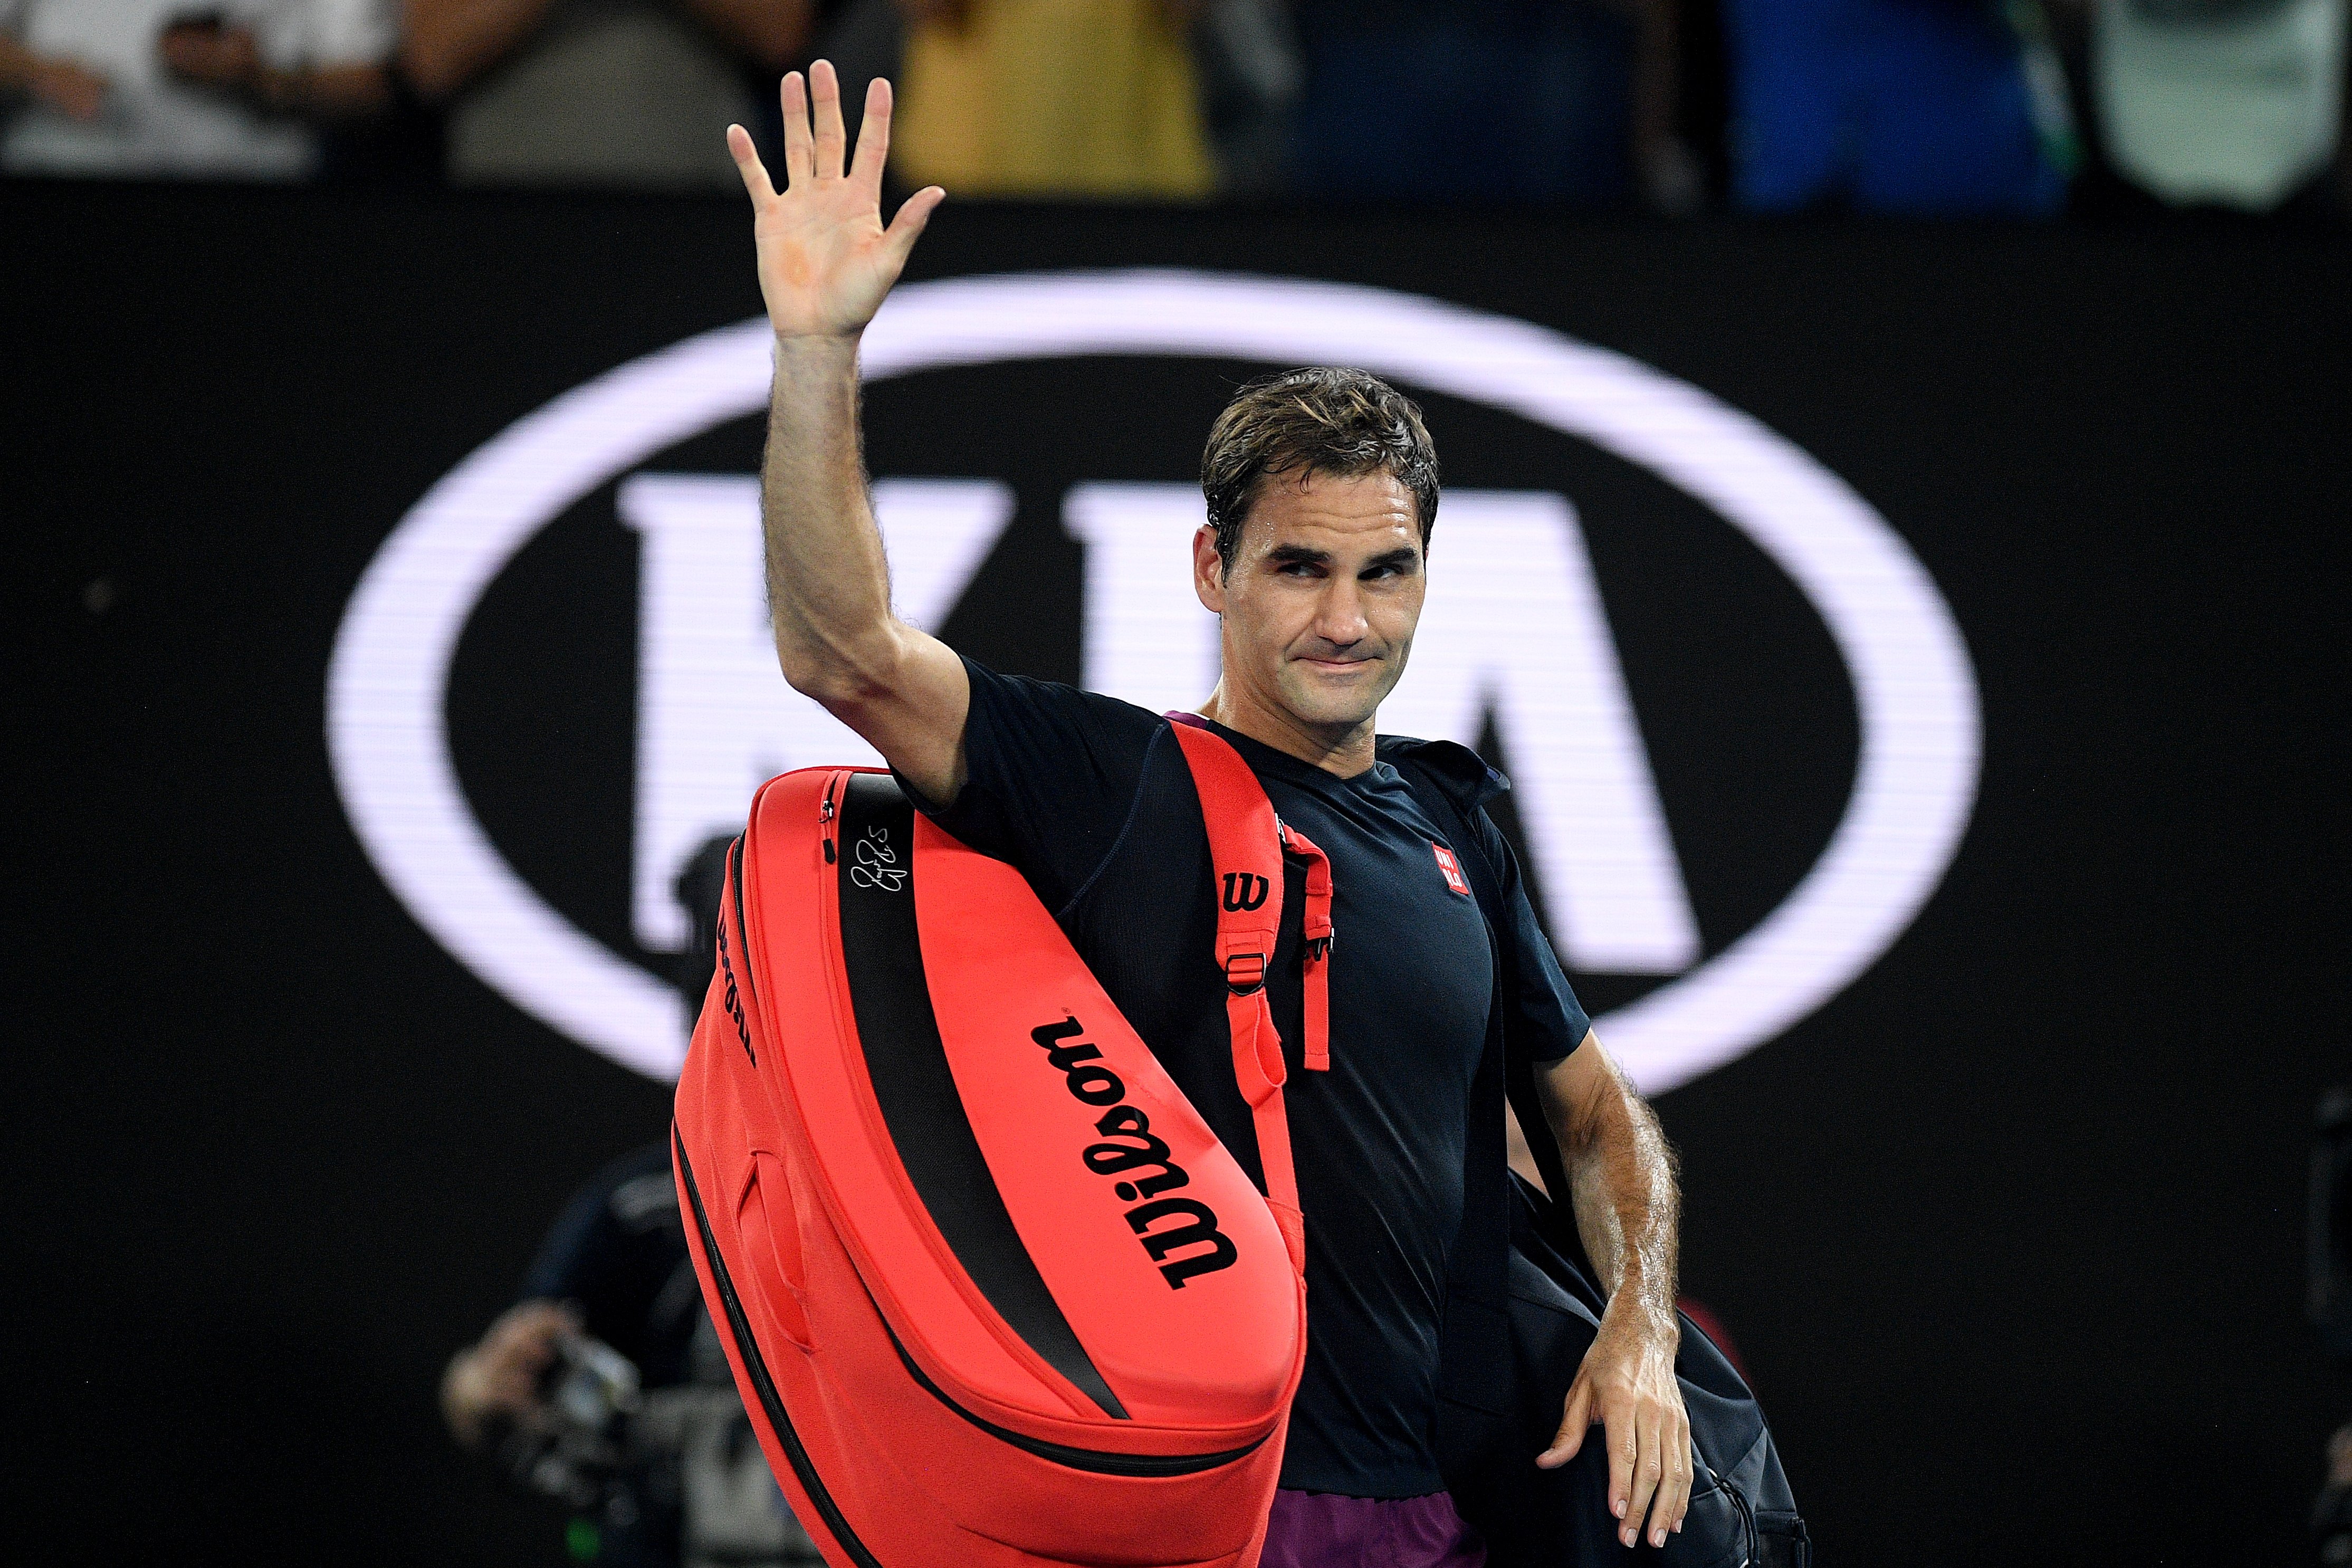 "No serà el mateix sense tu": tota la faràndula mundial, en dol, es fon i plora l'adeu del GOAT Roger Federer